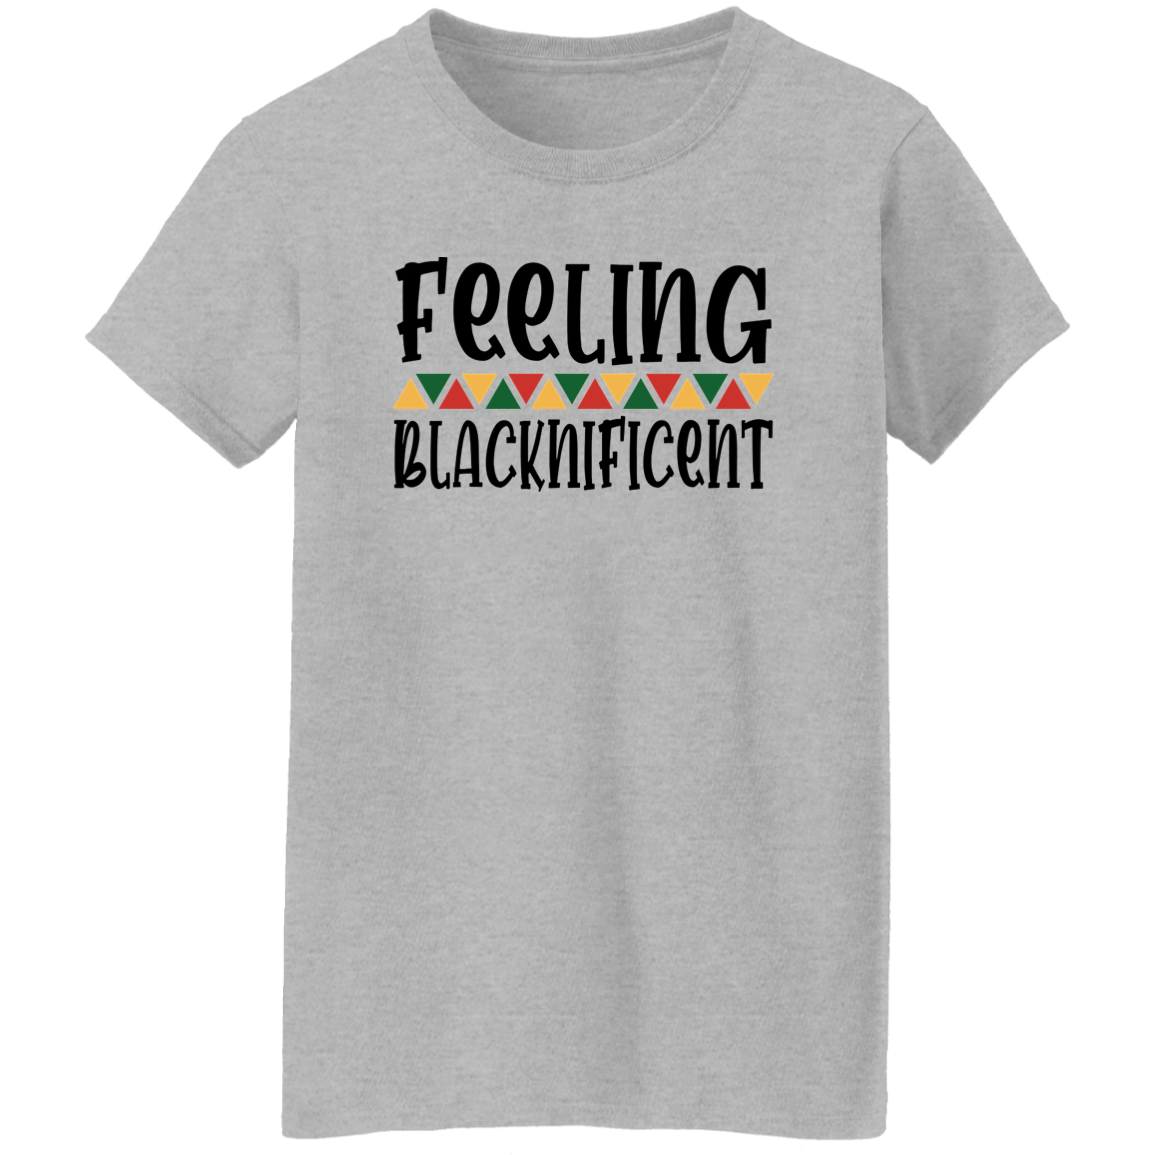 Blacknificent Ladies' 5.3 oz. T-Shirt